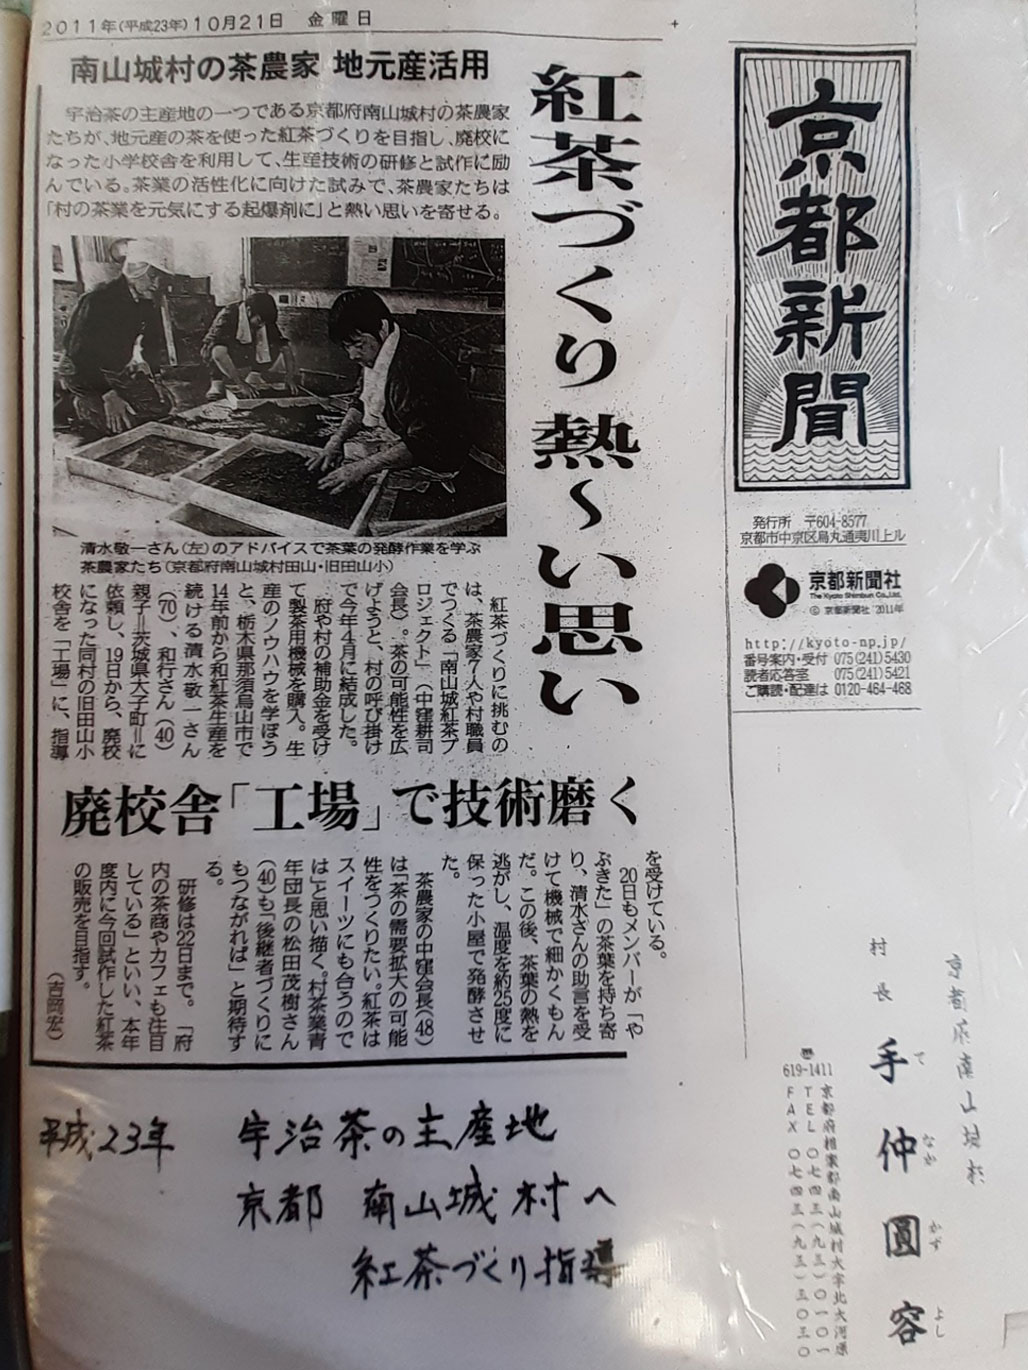 2011年10月21日の京都新聞記事